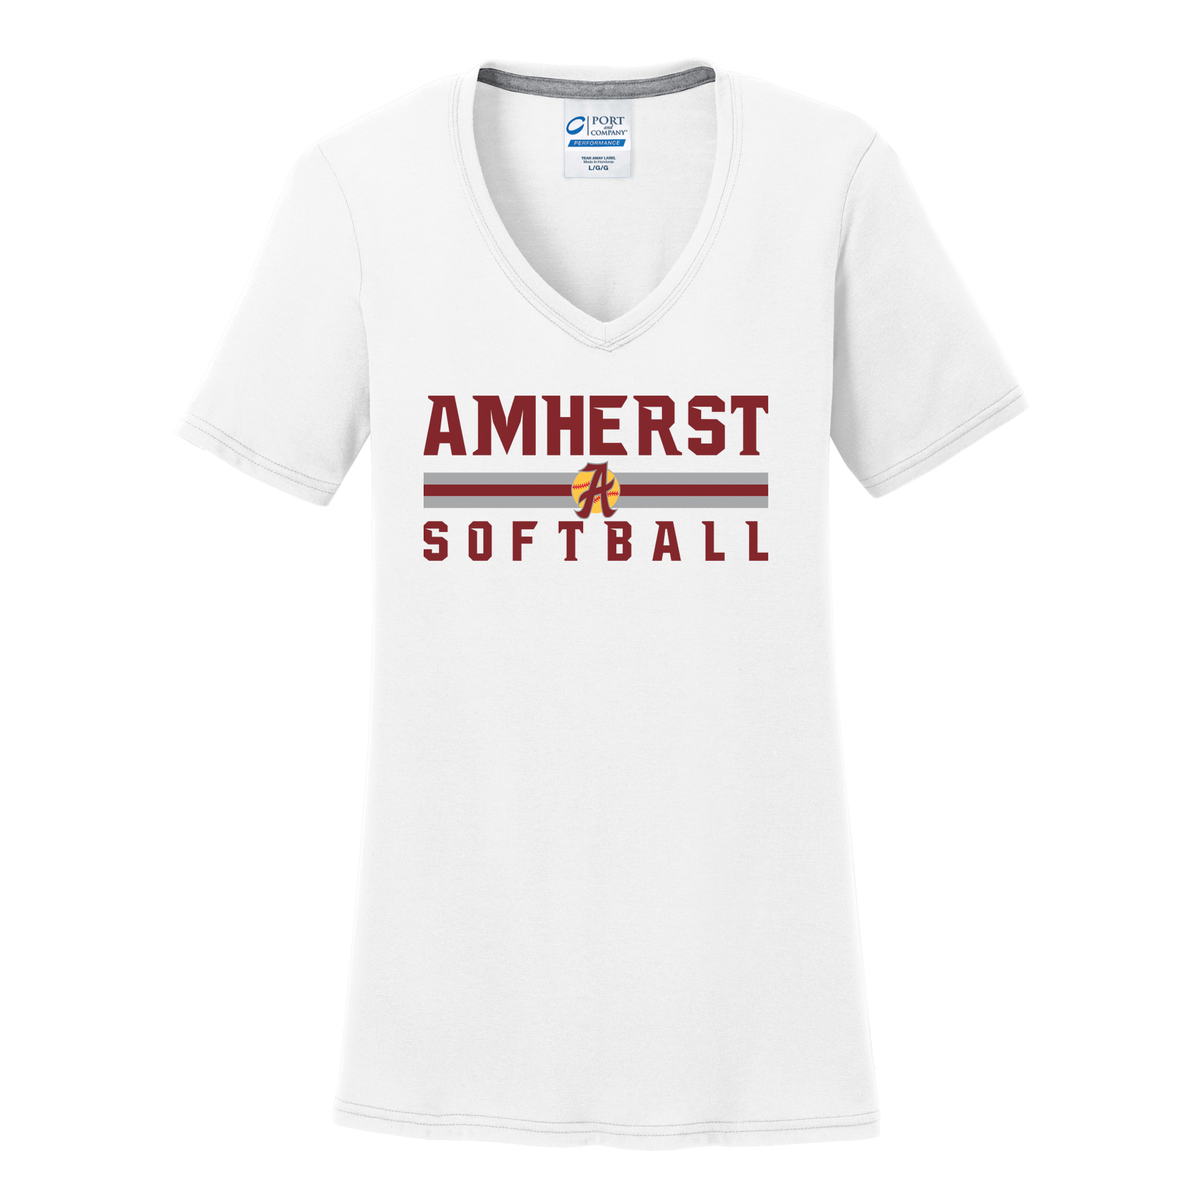 Amherst Softball Women's T-Shirt